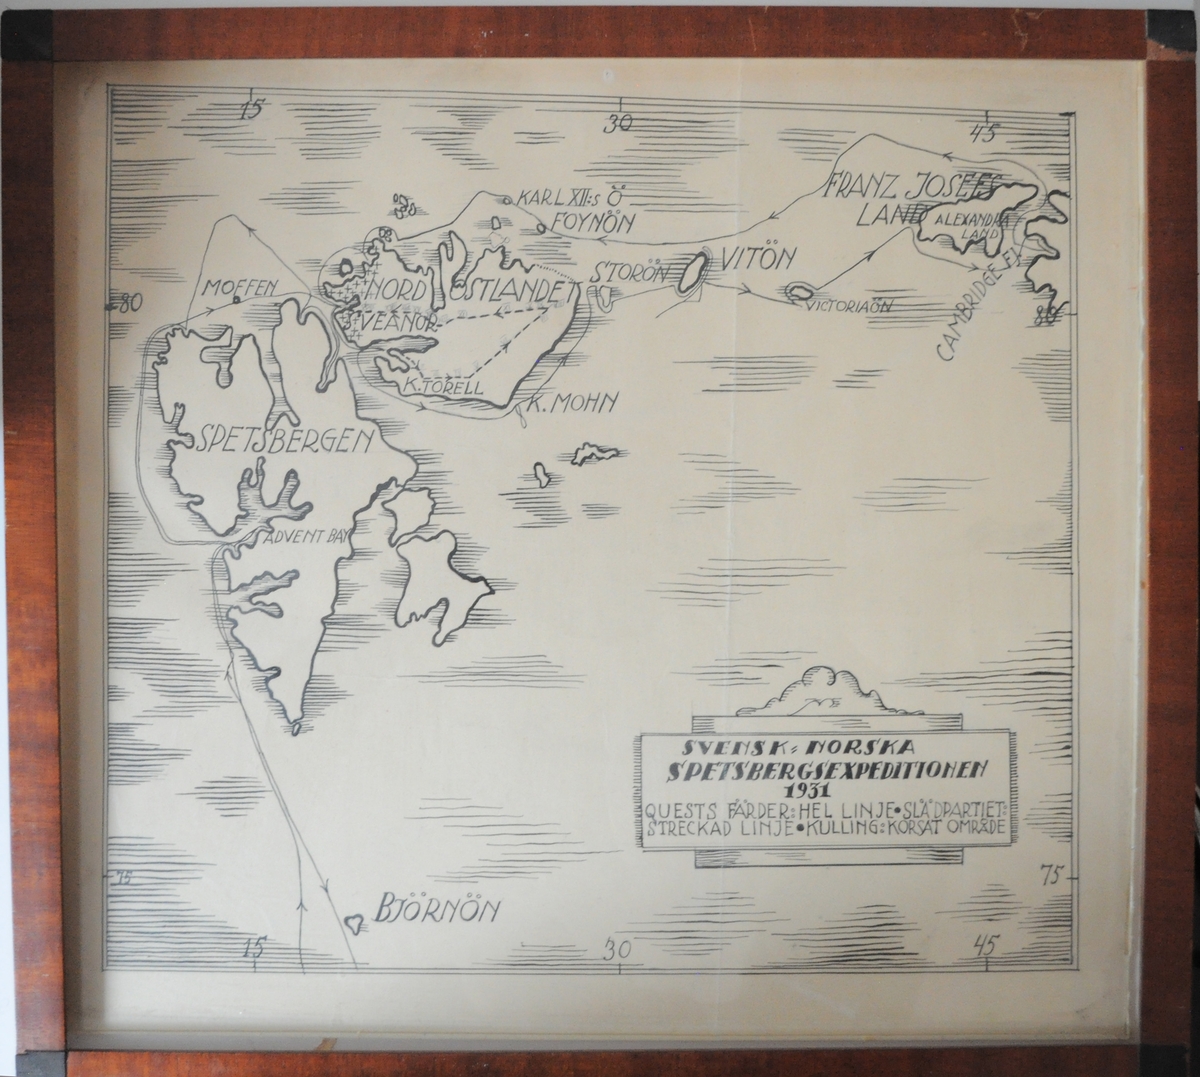 En tecknad karta i tusch och blyerts föreställande Spetsbergen.
Kartan är inramad och den gamla kartongen på tavlans baksida som ej var syrafri har bytts ut. Den gamla kartongen hade dock text varför den har sparats och märkts.